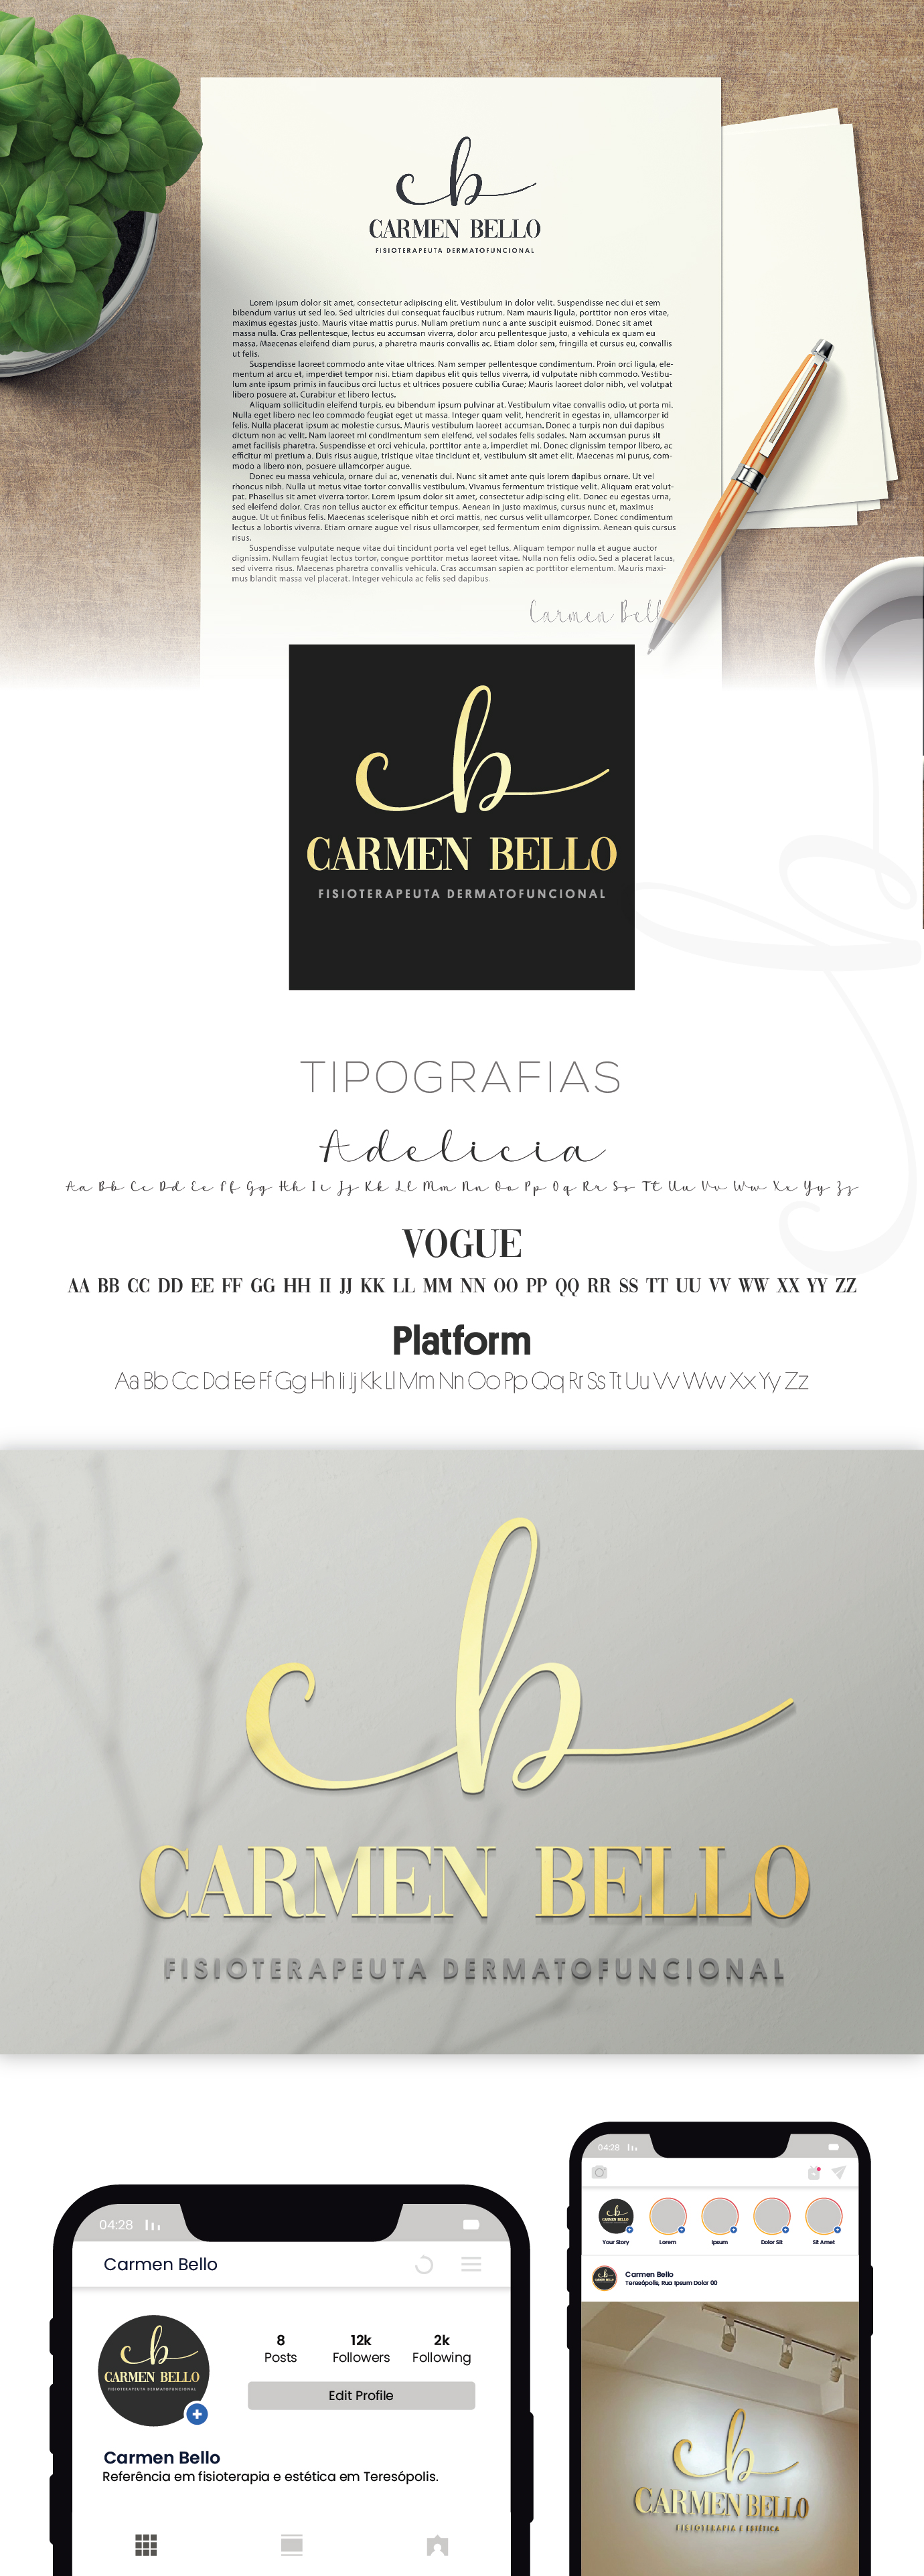 Carmen Bello - apresentação.jpg